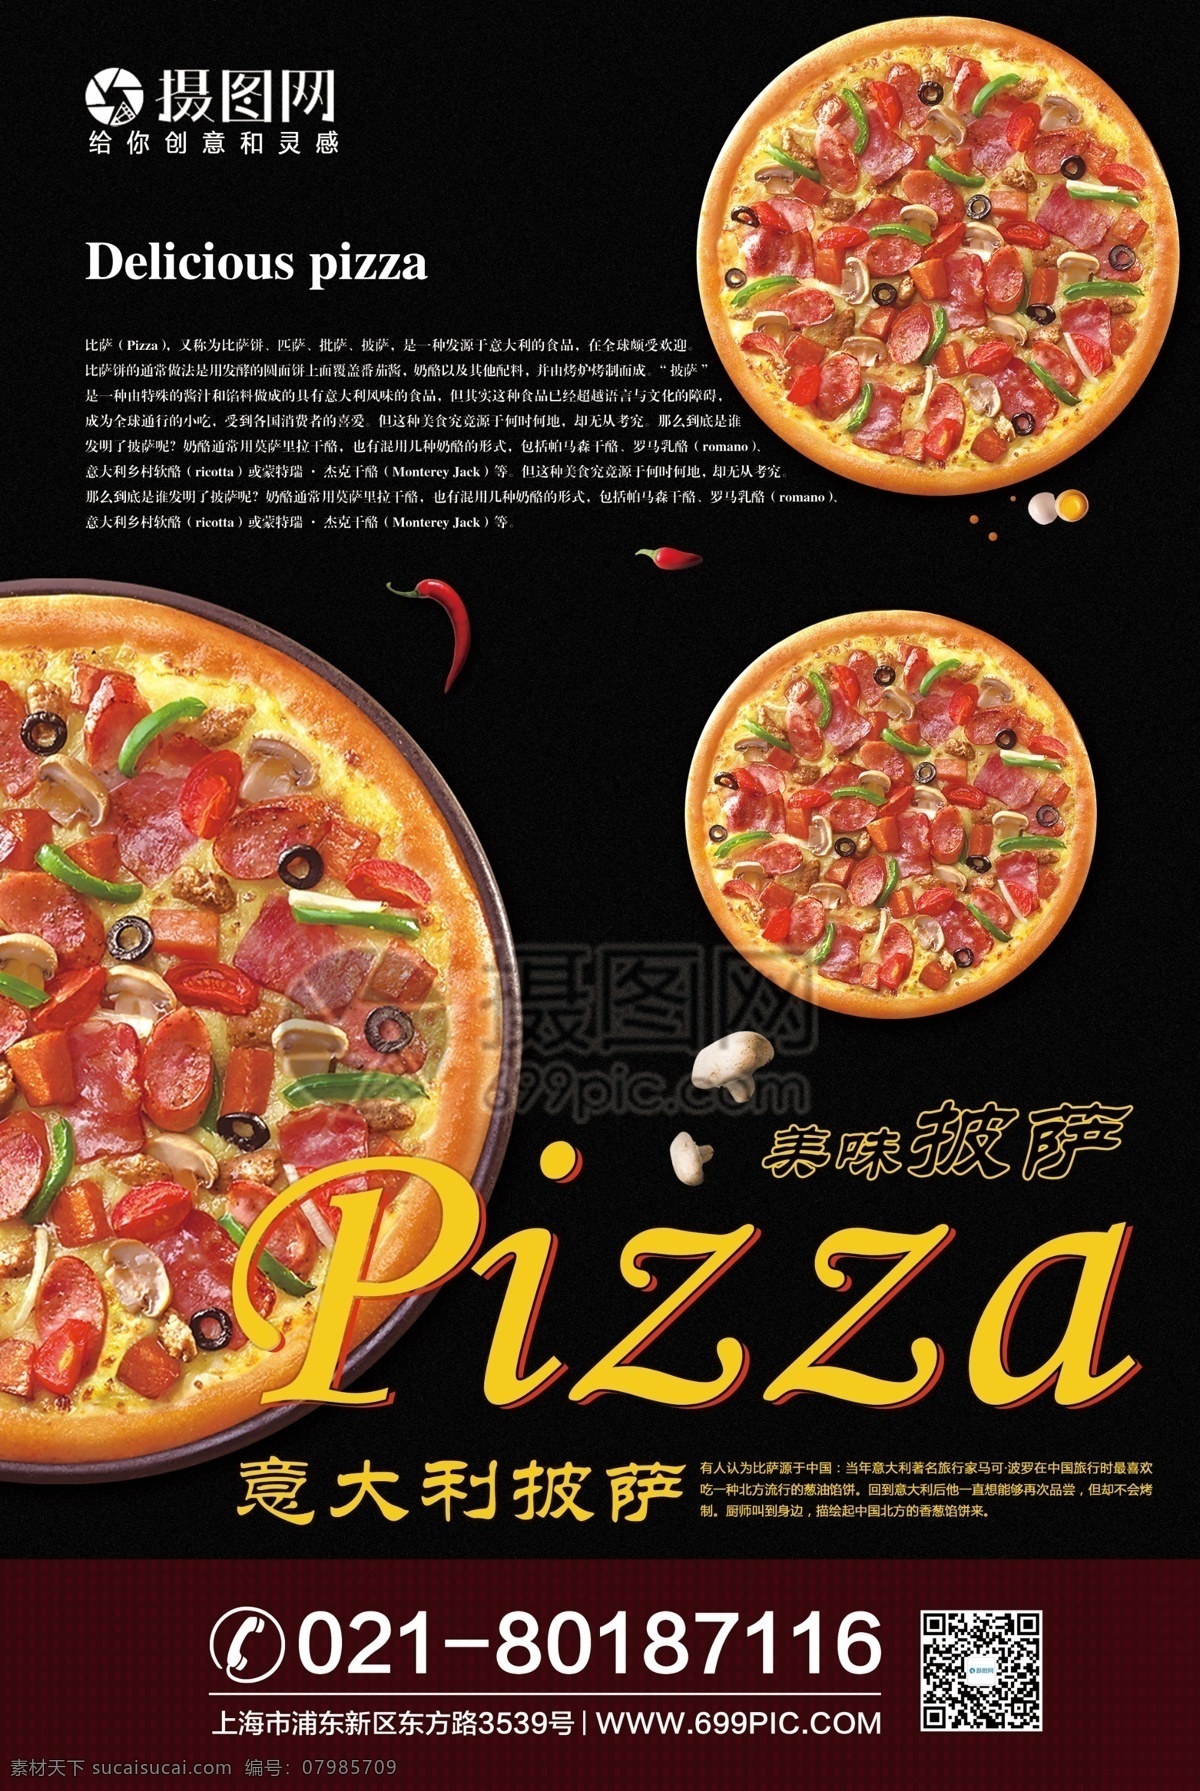 西餐披萨海报 西餐海报 餐饮海报 黑色风格 西餐 美味披萨 披萨海报 披萨文化 披萨促销 快餐 披萨店 比萨 美食 西式披萨 披萨馅饼 海报